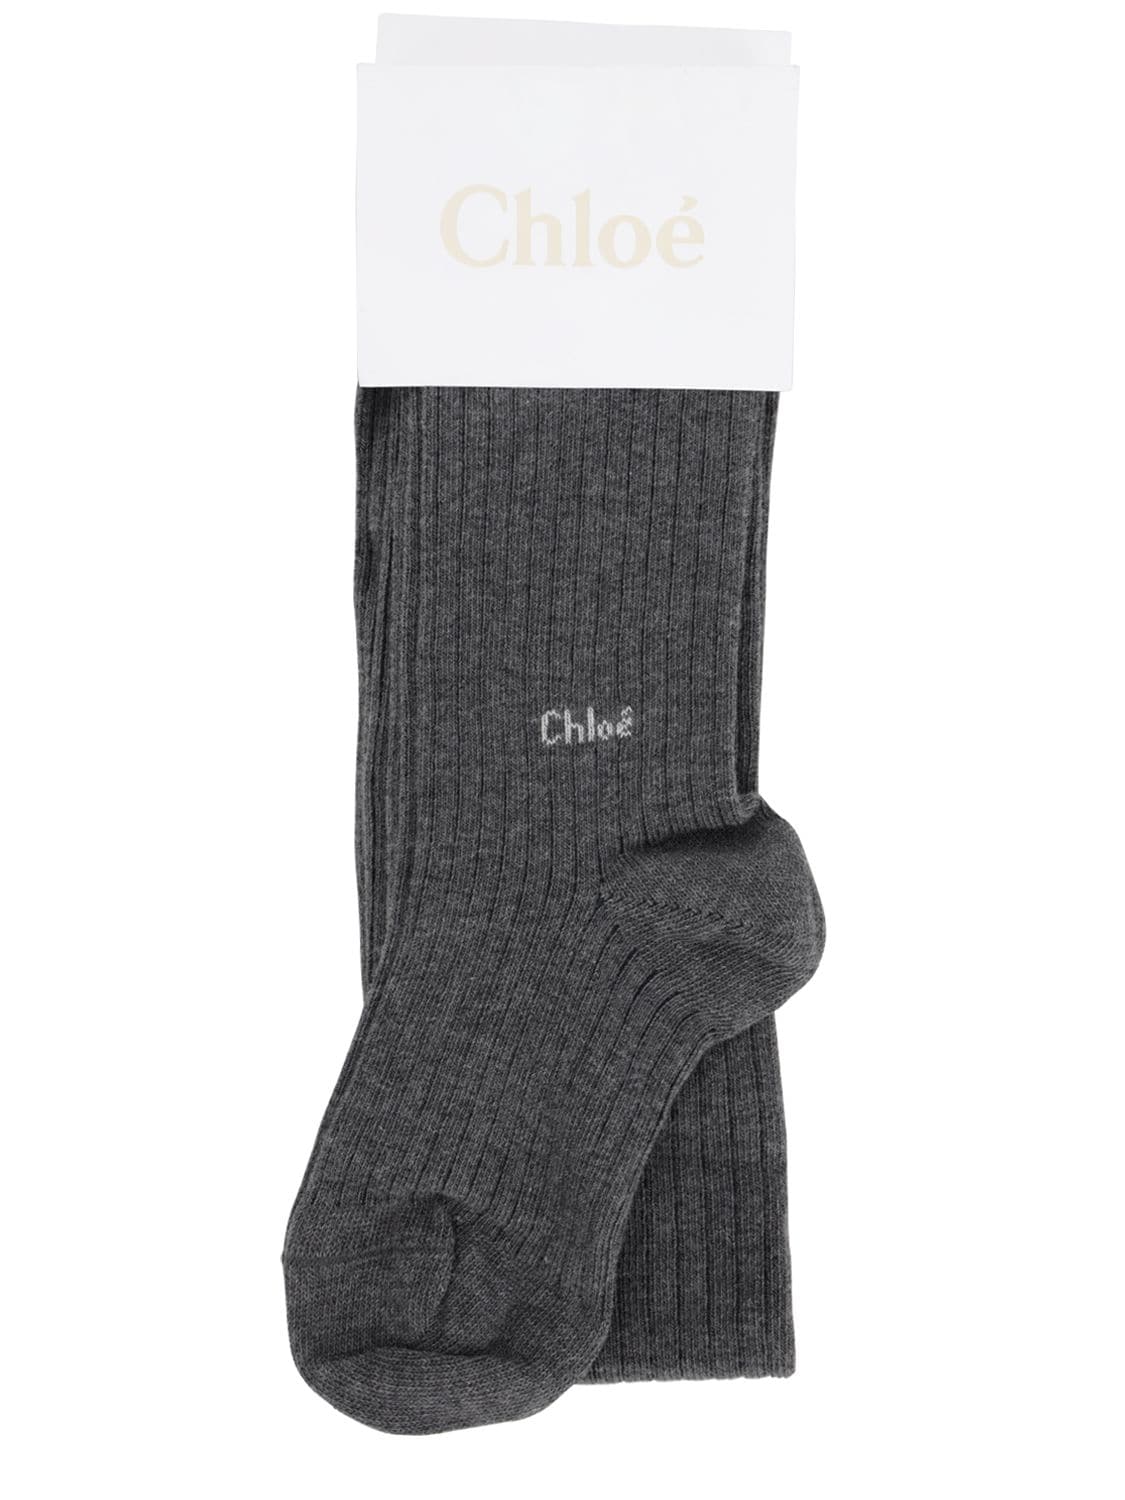 Chloé Kids' Cotton Blend Rib Knit Tights In Grey